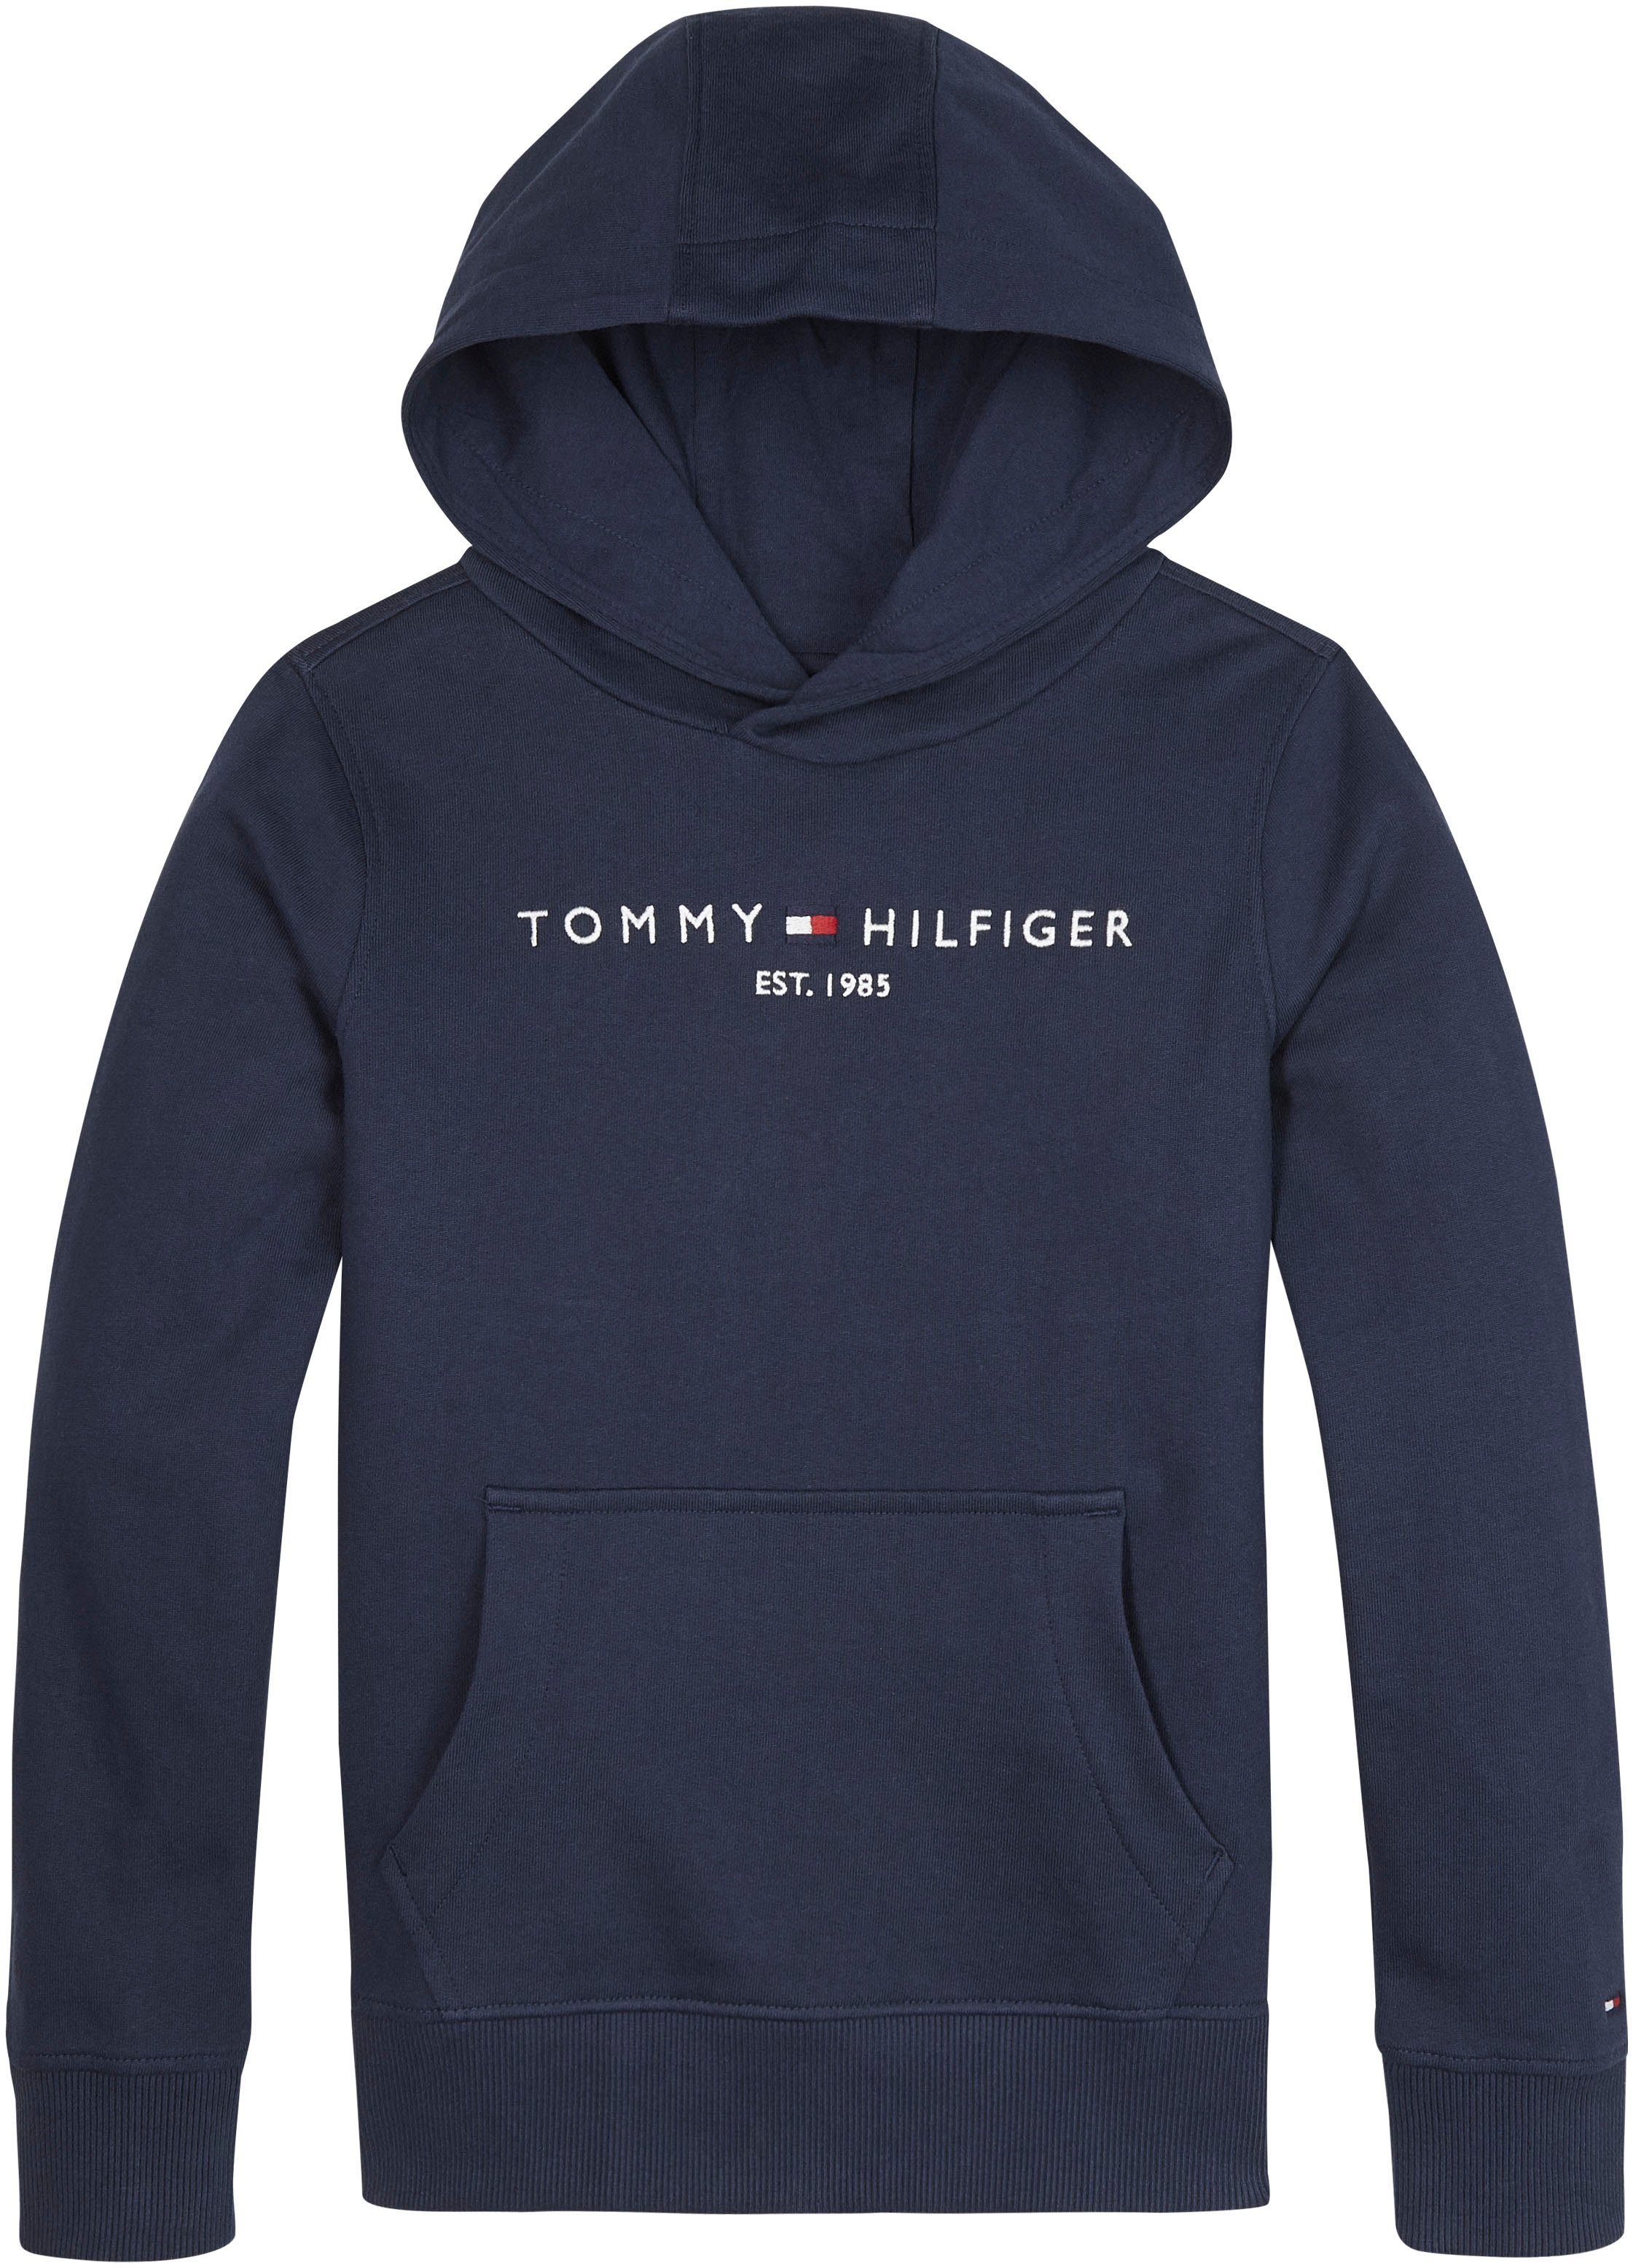 Tommy Hilfiger Jungen Pullover online kaufen | OTTO